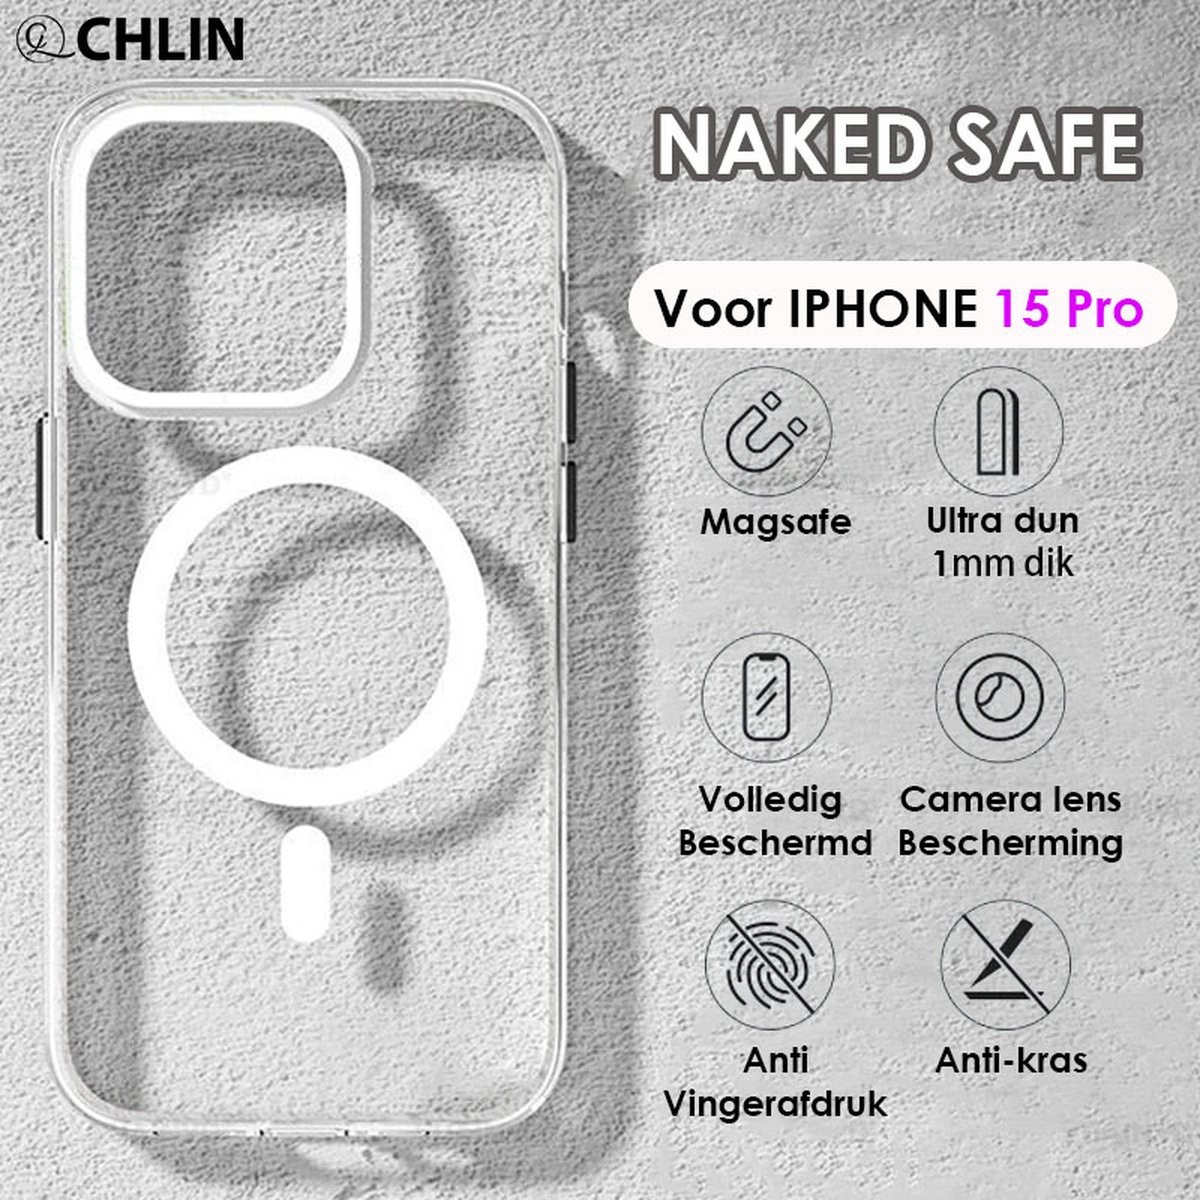 CL CHLIN Naked Safe - transparant Hoesje voor Iphone 15 Pro met Magsafe magneet en Matrix airbag - Iphone 15 Pro hoesje - nieuw model - Dun hoesje iphone 15 Pro - Iphone 15 Pro - Iphone 15 Pro Accessoires - iphone 15 Pro case - Kerstcadeau